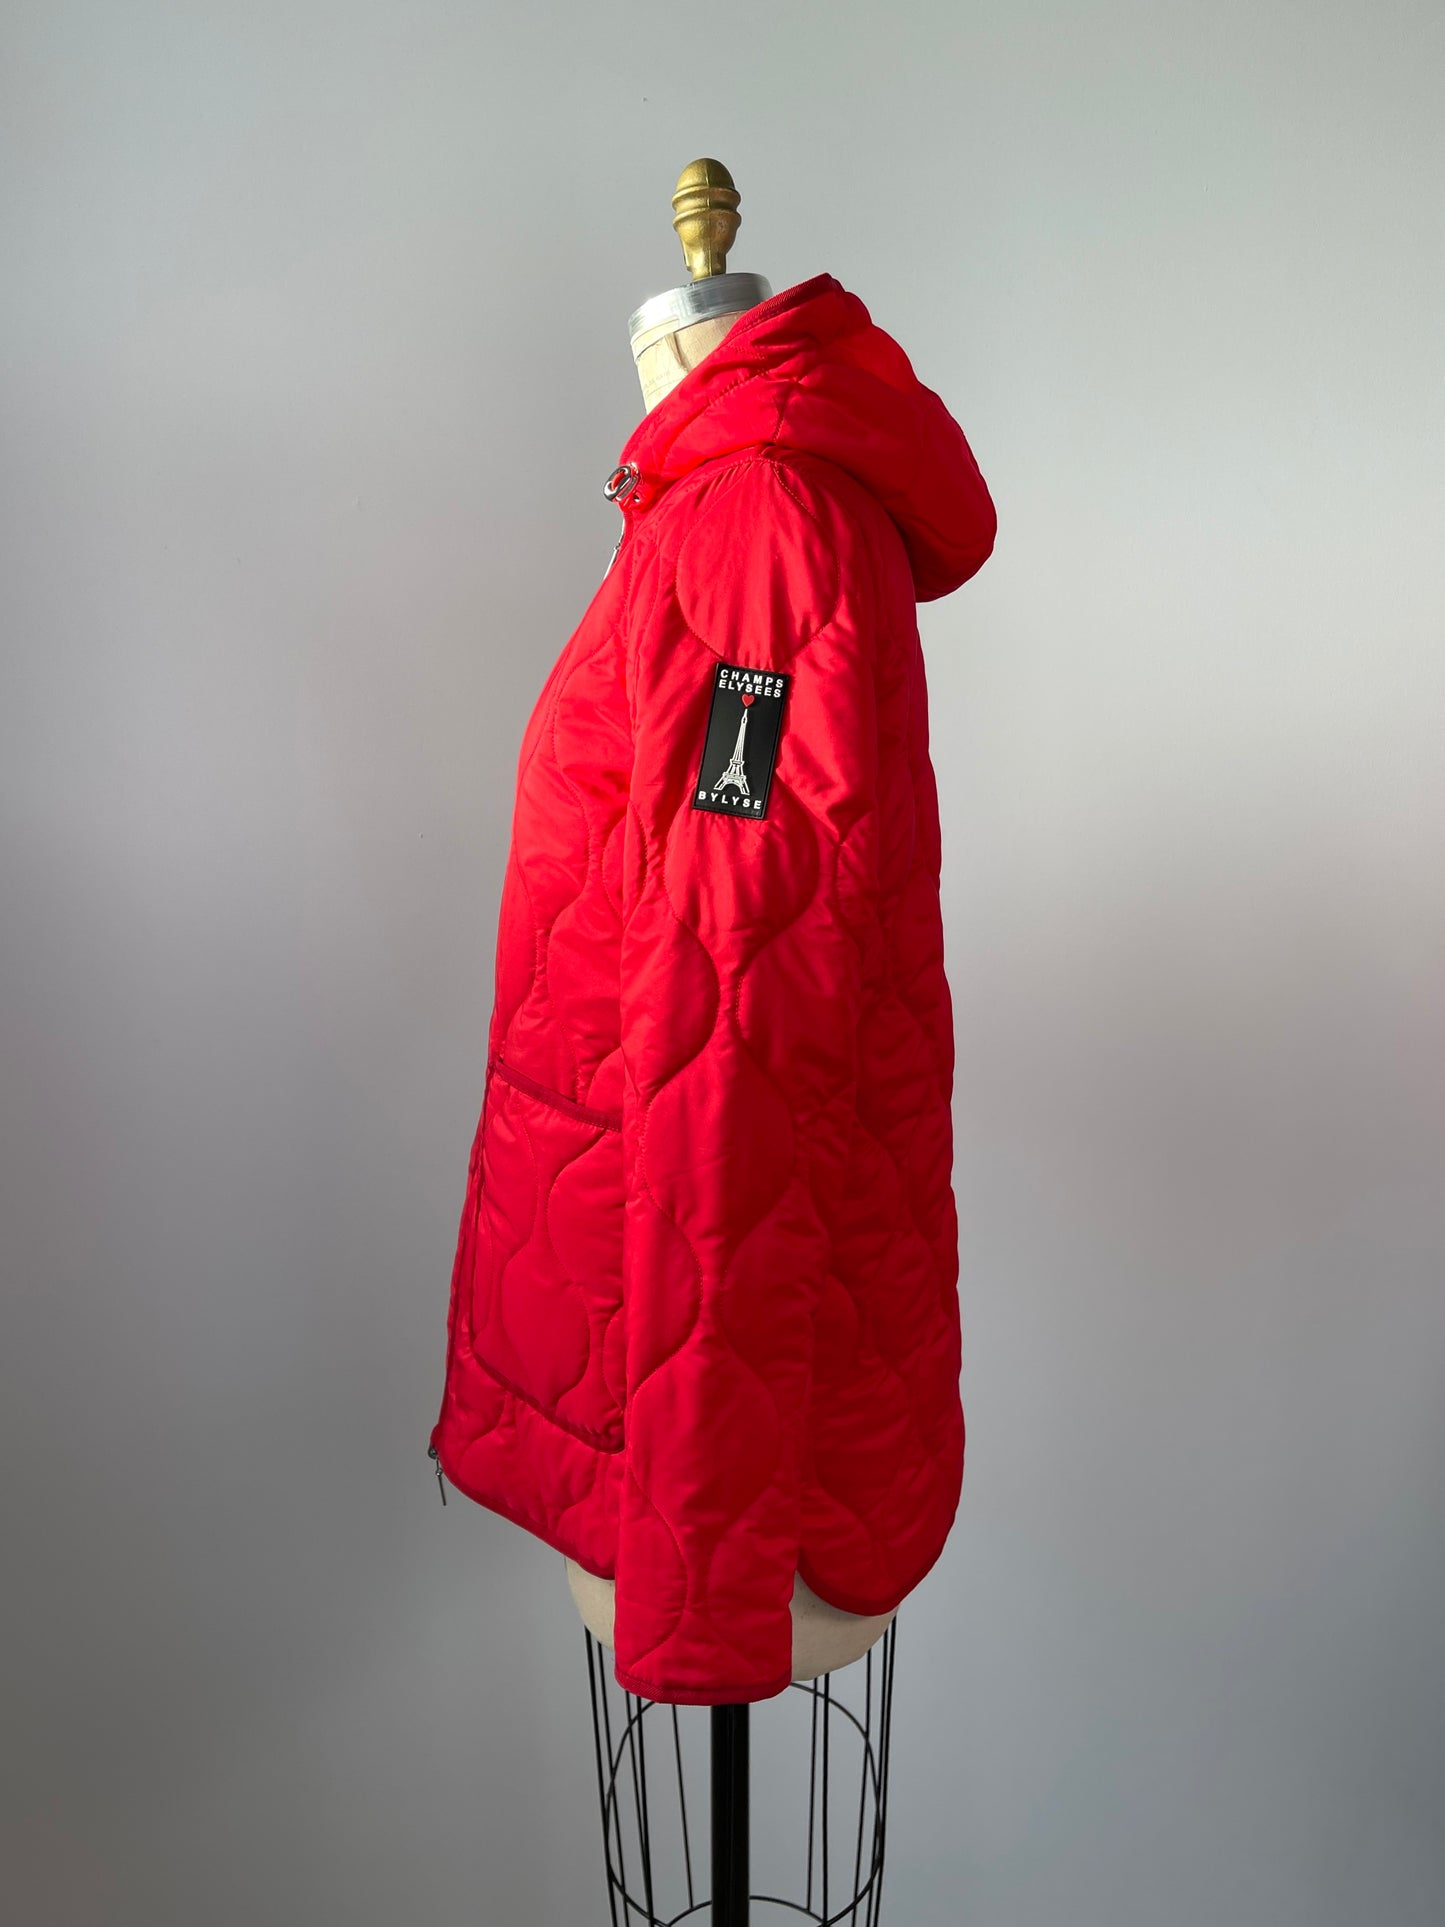 Manteau matelassé réversible blanc / rouge à capuchon  (S)